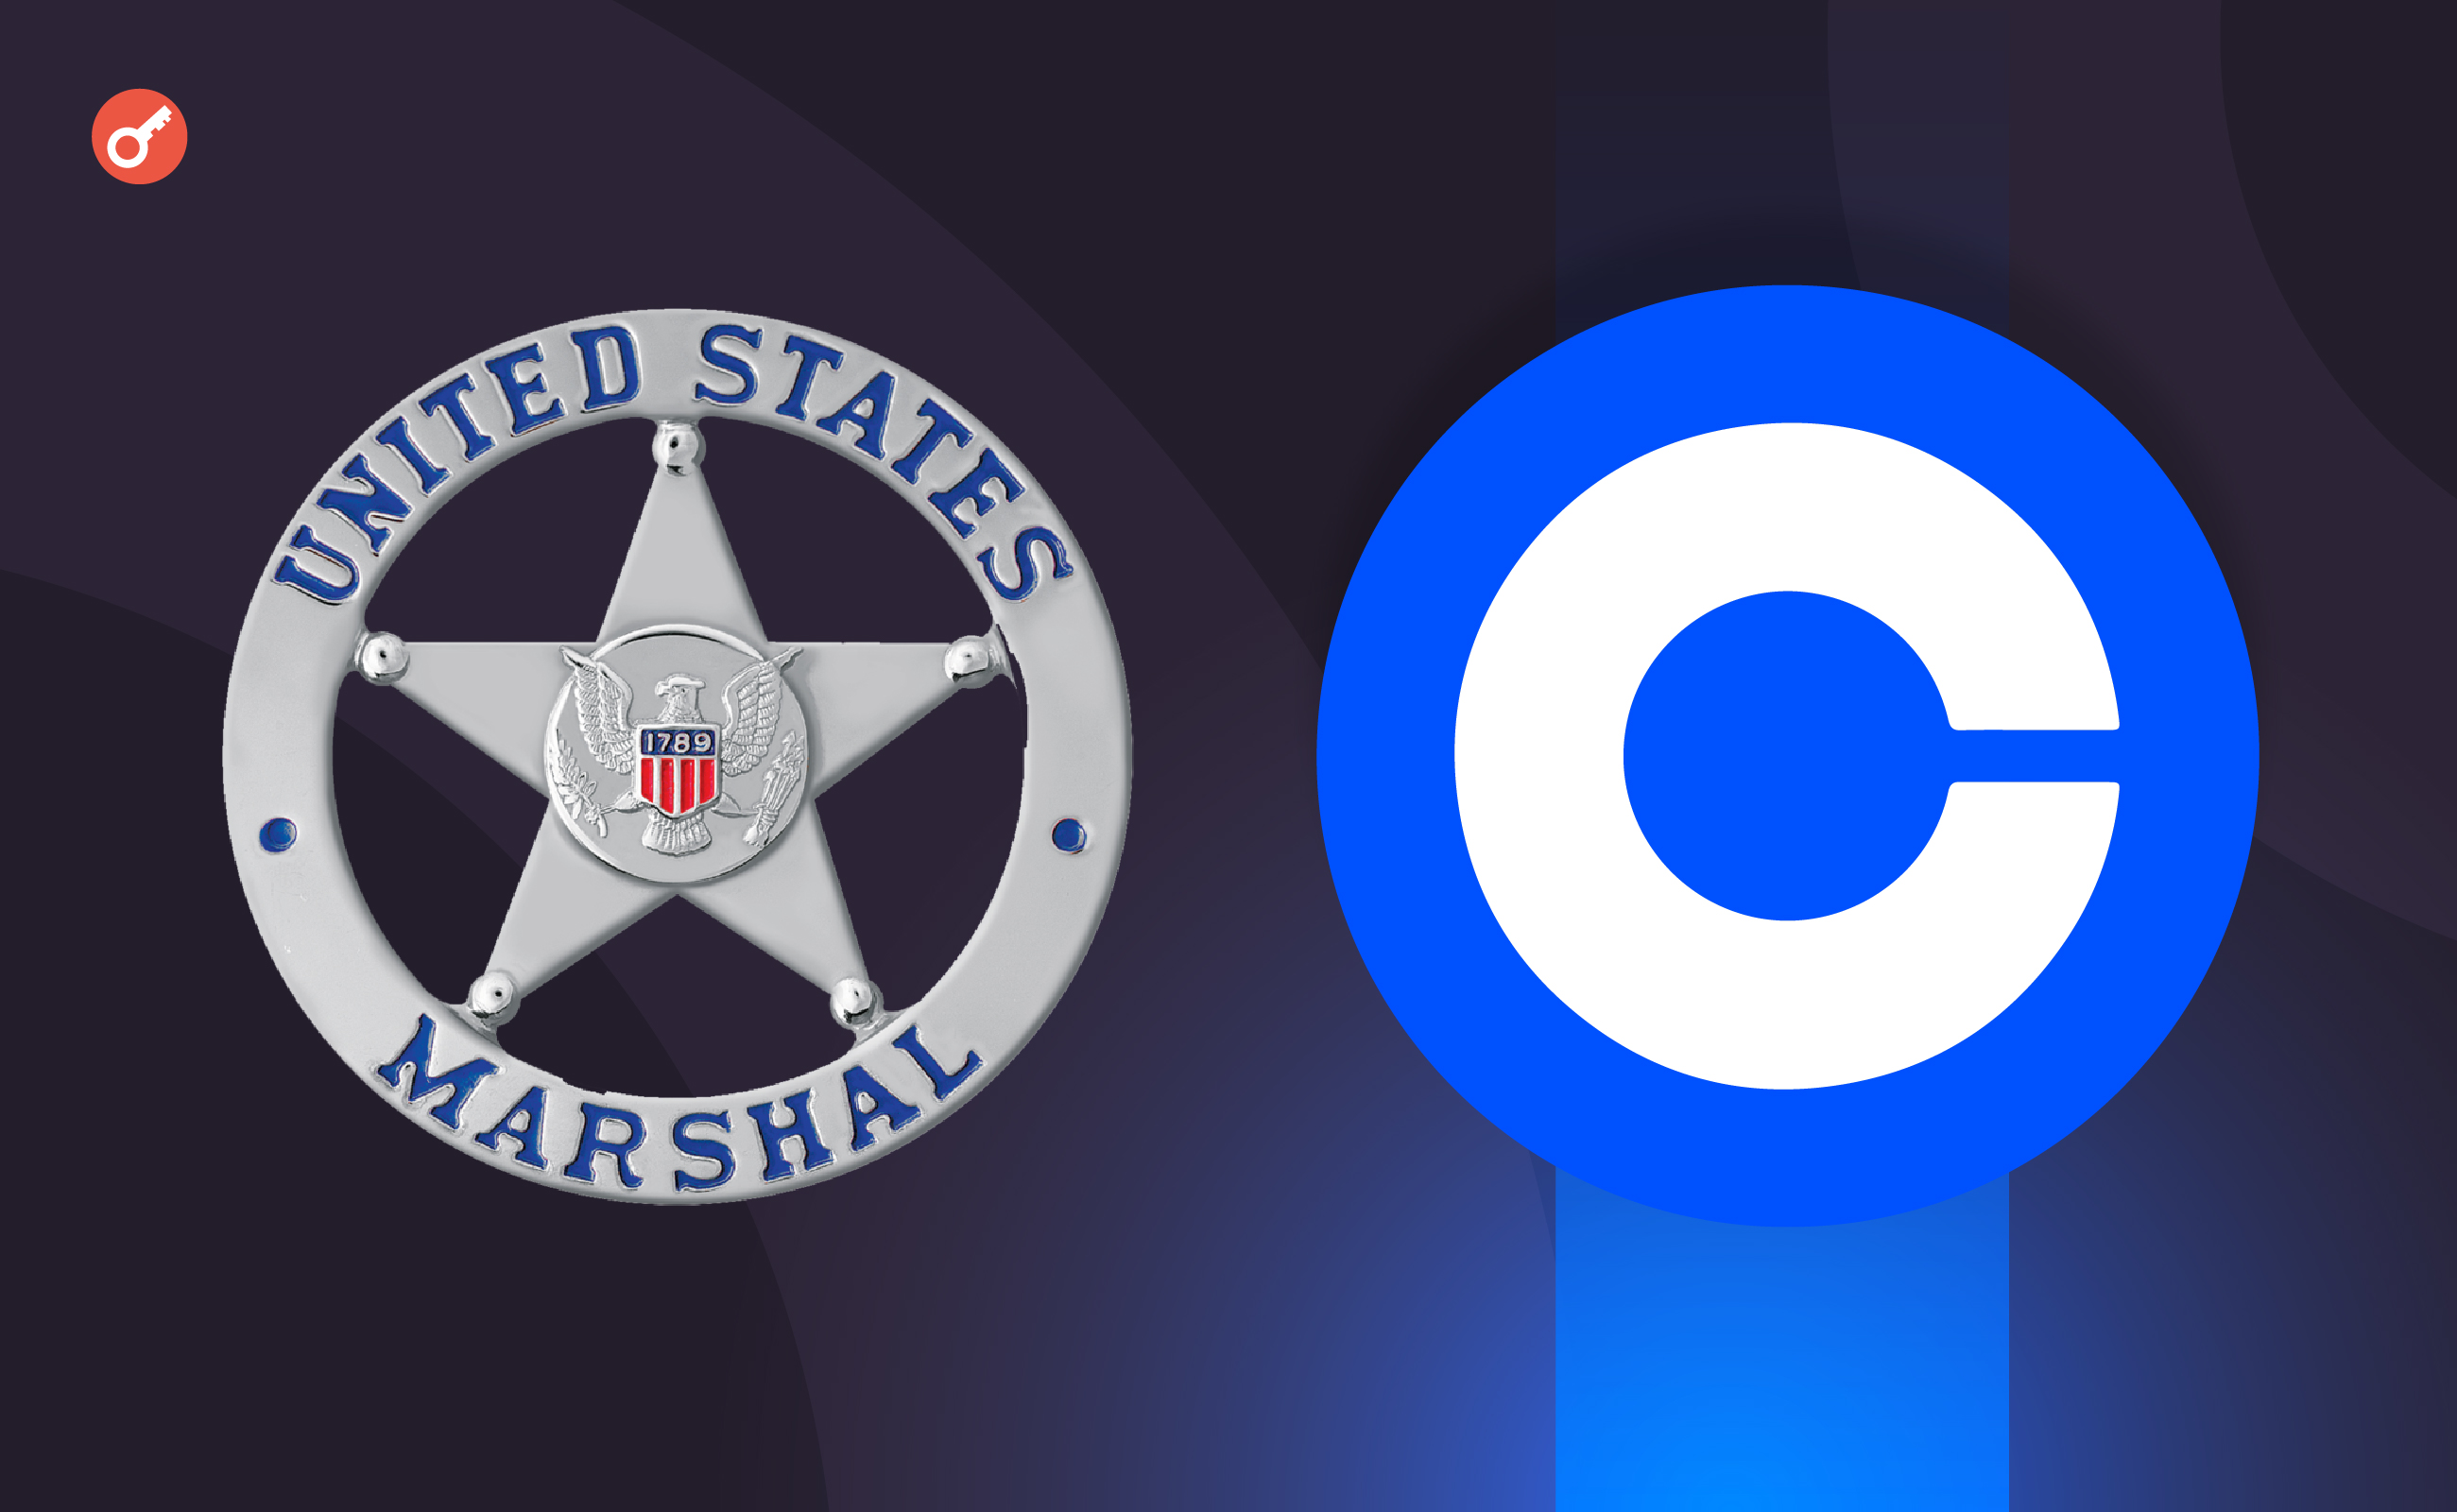 Служба маршалів США вибрала Coinbase для надання послуг з торгівлі цифровими активами. Головний колаж новини.